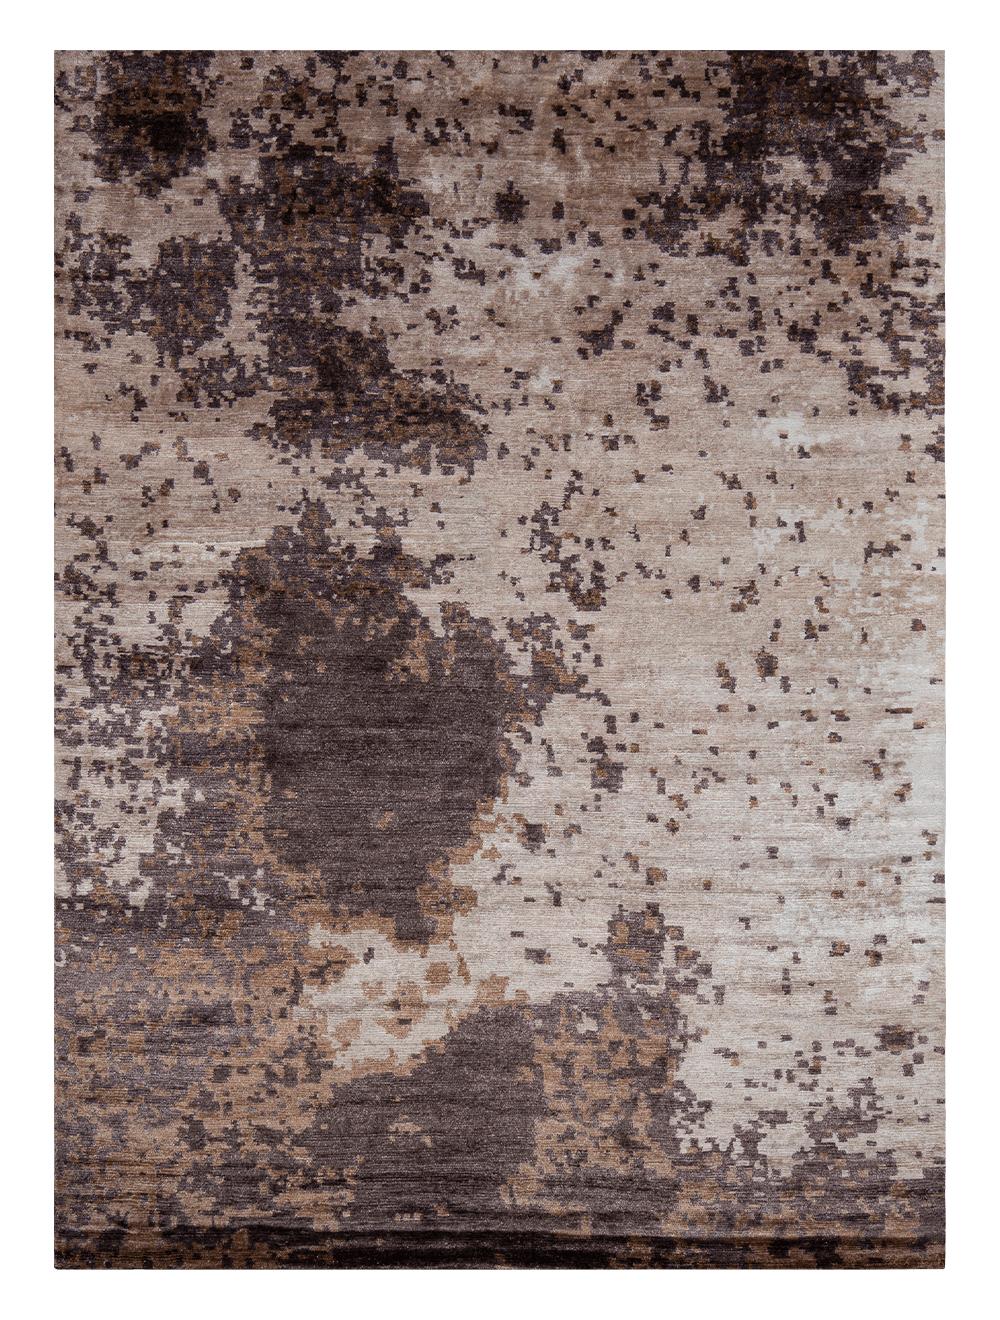 Kupfer-Mond-Teppich von Massimo Copenhagen
Handgeknüpft
MATERIALIEN:  100% Bambus 
Abmessungen: B 200 x H 300 cm
Verfügbare Farben: Moon Night und Copper Moon.
Andere Abmessungen sind möglich: 170x240 cm und Sondergrößen.

Copper Moon ist ein